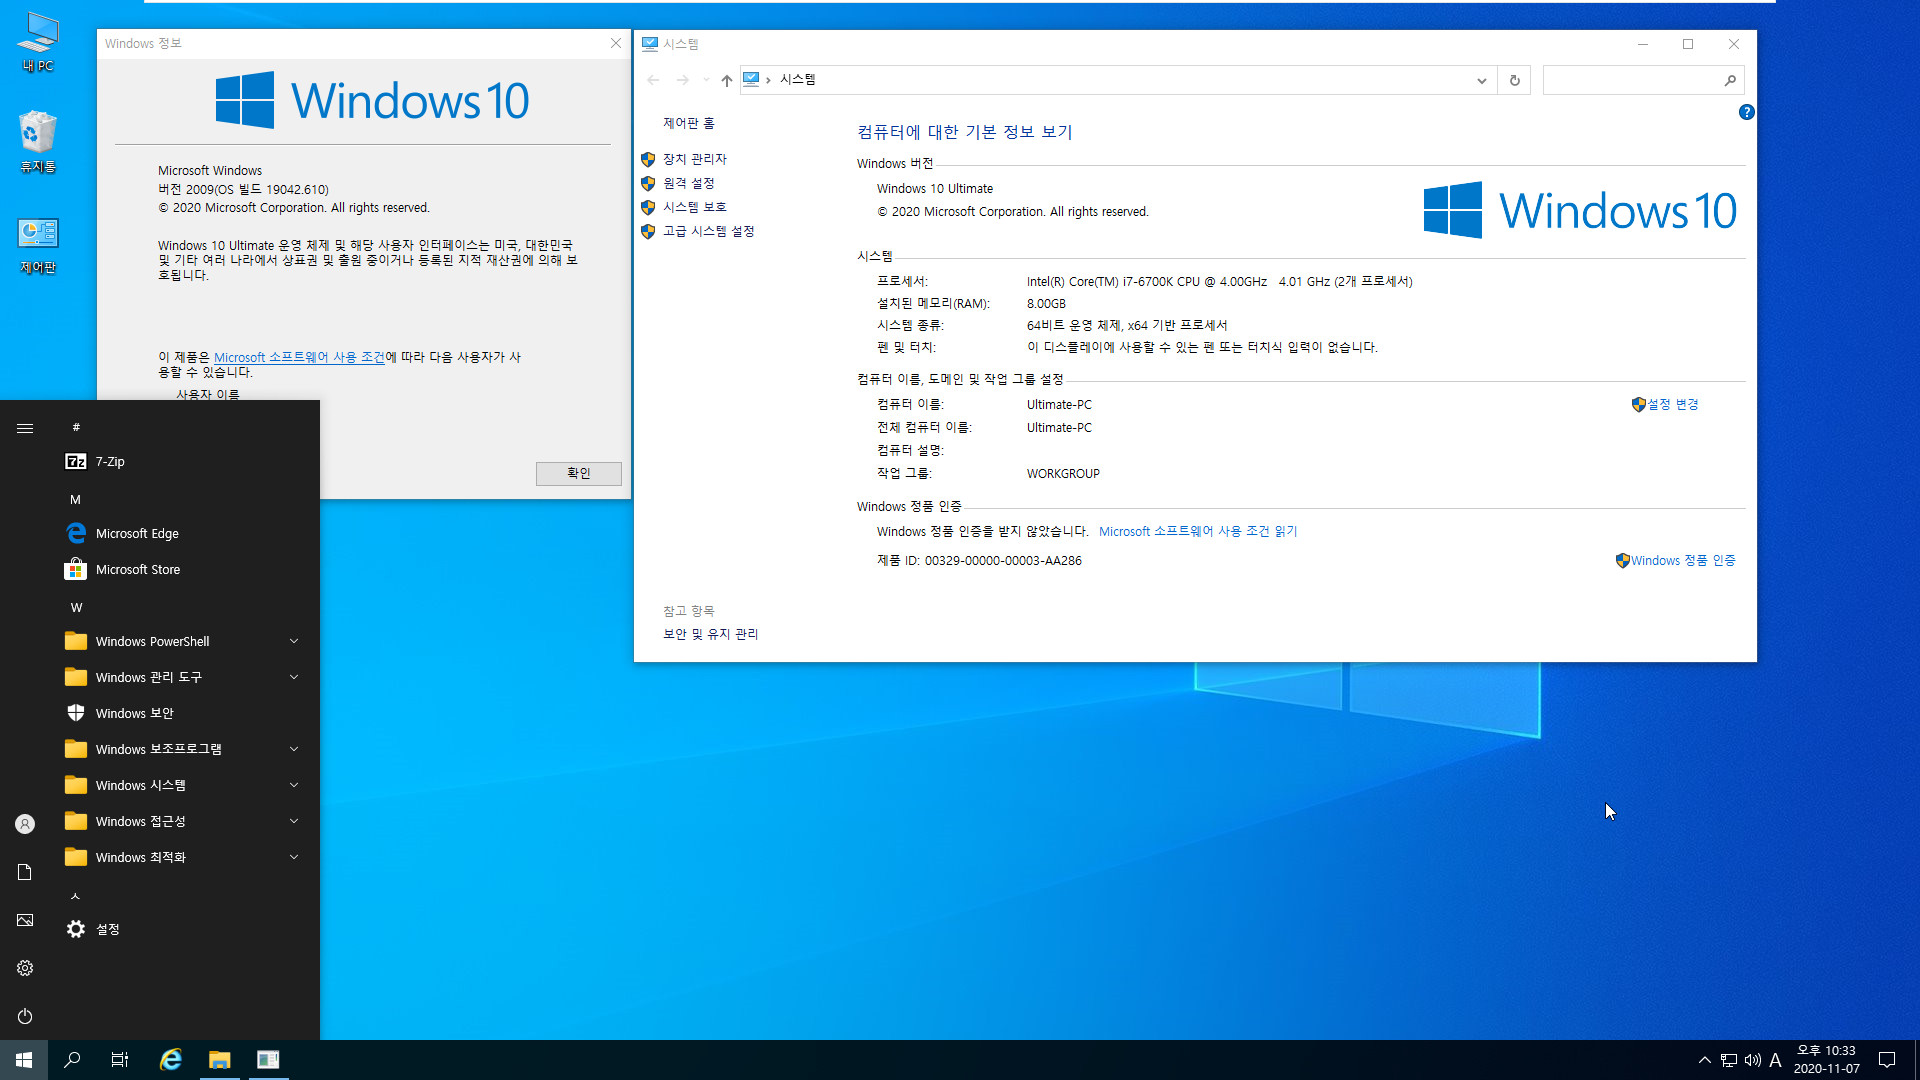 3.Kong_Windows10_v2009_19042.610_x64.vhd 에 Imagew64.exe 으로 복구하여 부팅 테스트 2020-11-07_223308.jpg